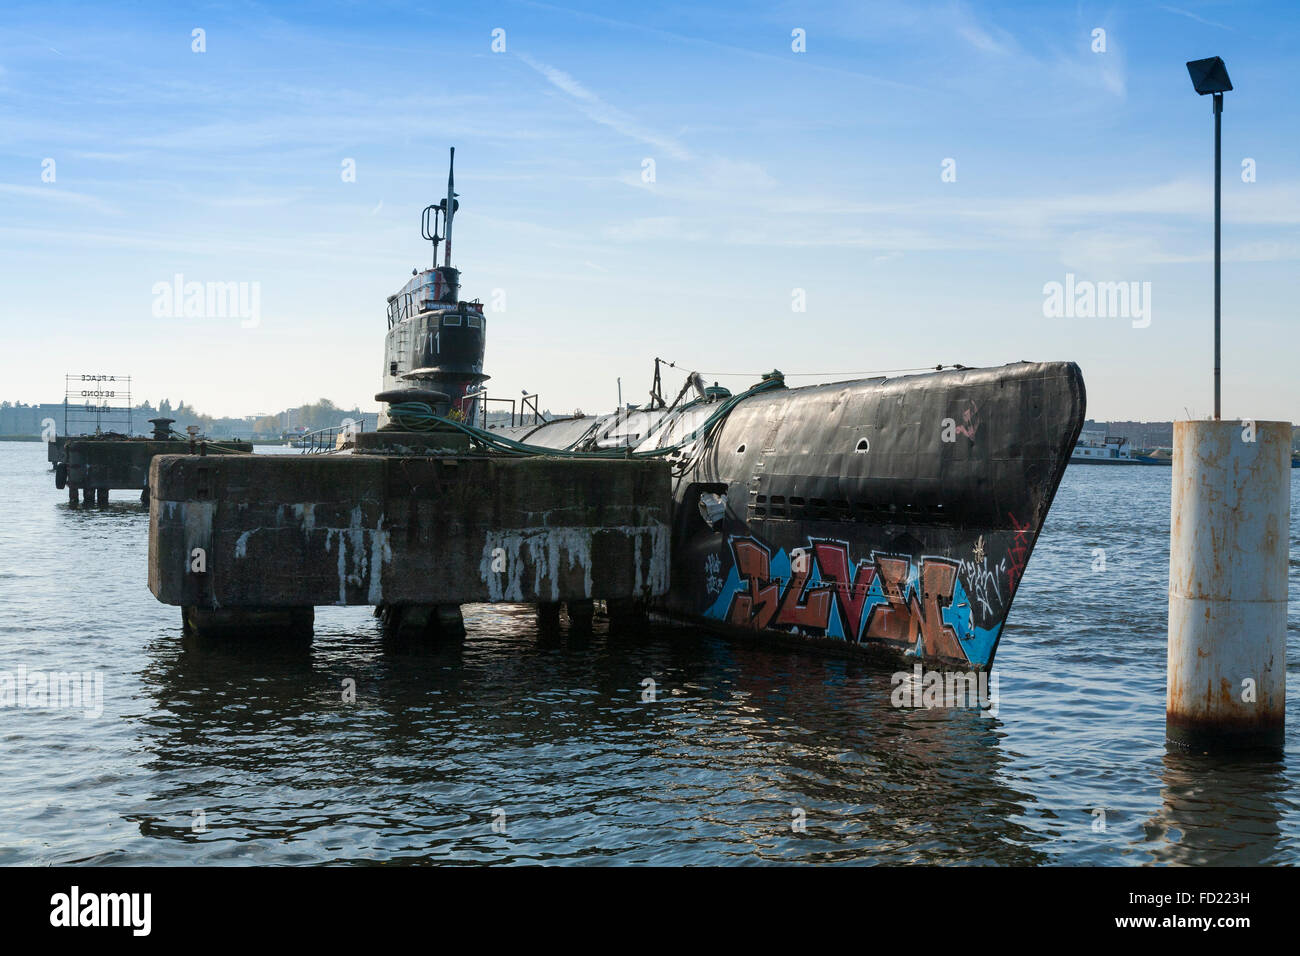 Il progetto sovietico 611 o Zulu V sottomarino di classe B-80, può essere trovato nel quartiere marittimo nella zona nord di Amsterdam, Paesi Bassi. Foto Stock